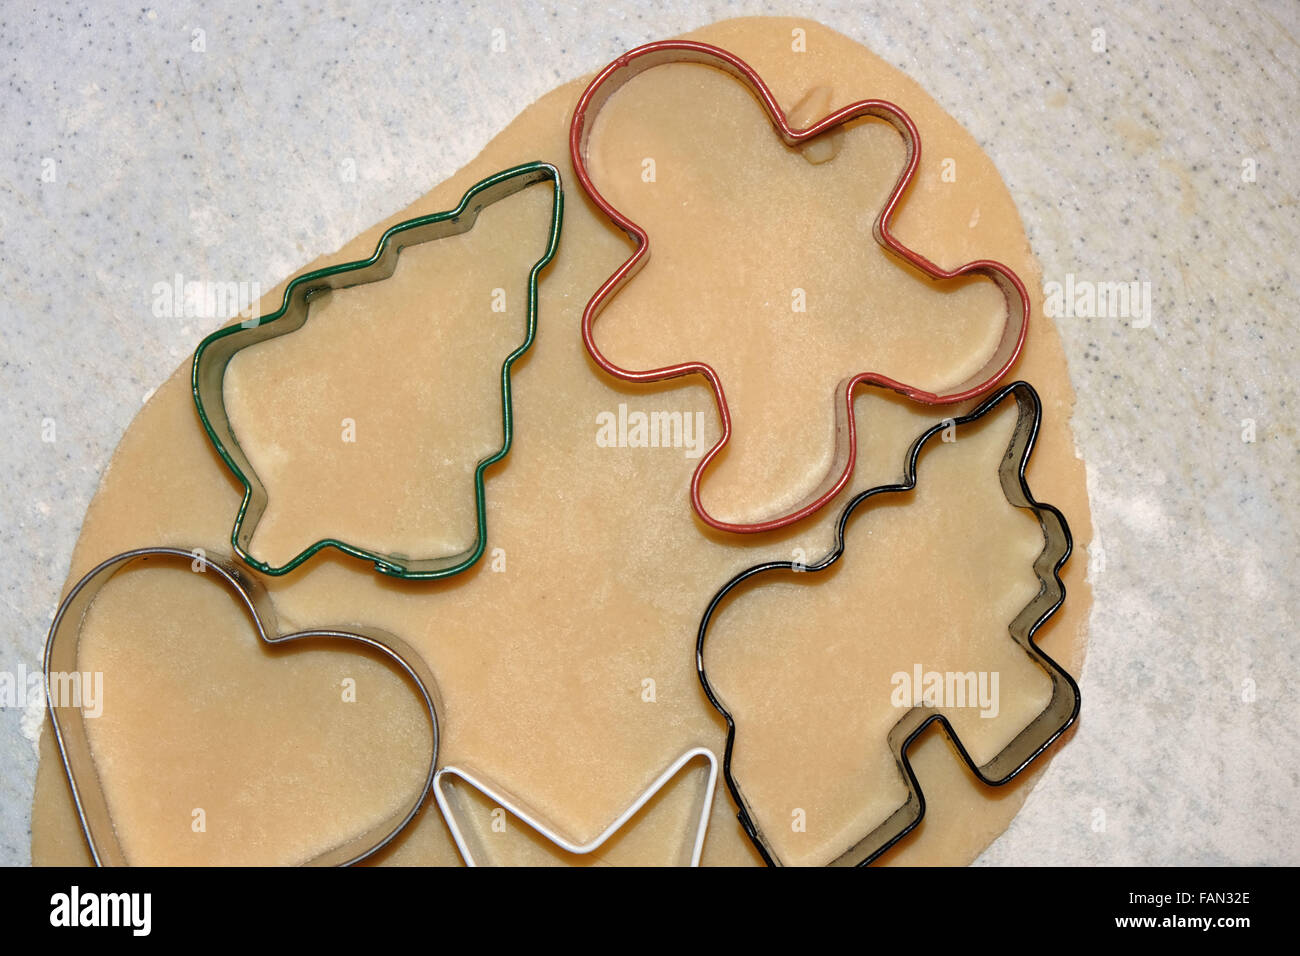 La pâte à biscuits de Noël en sucre avec des découpes. Banque D'Images